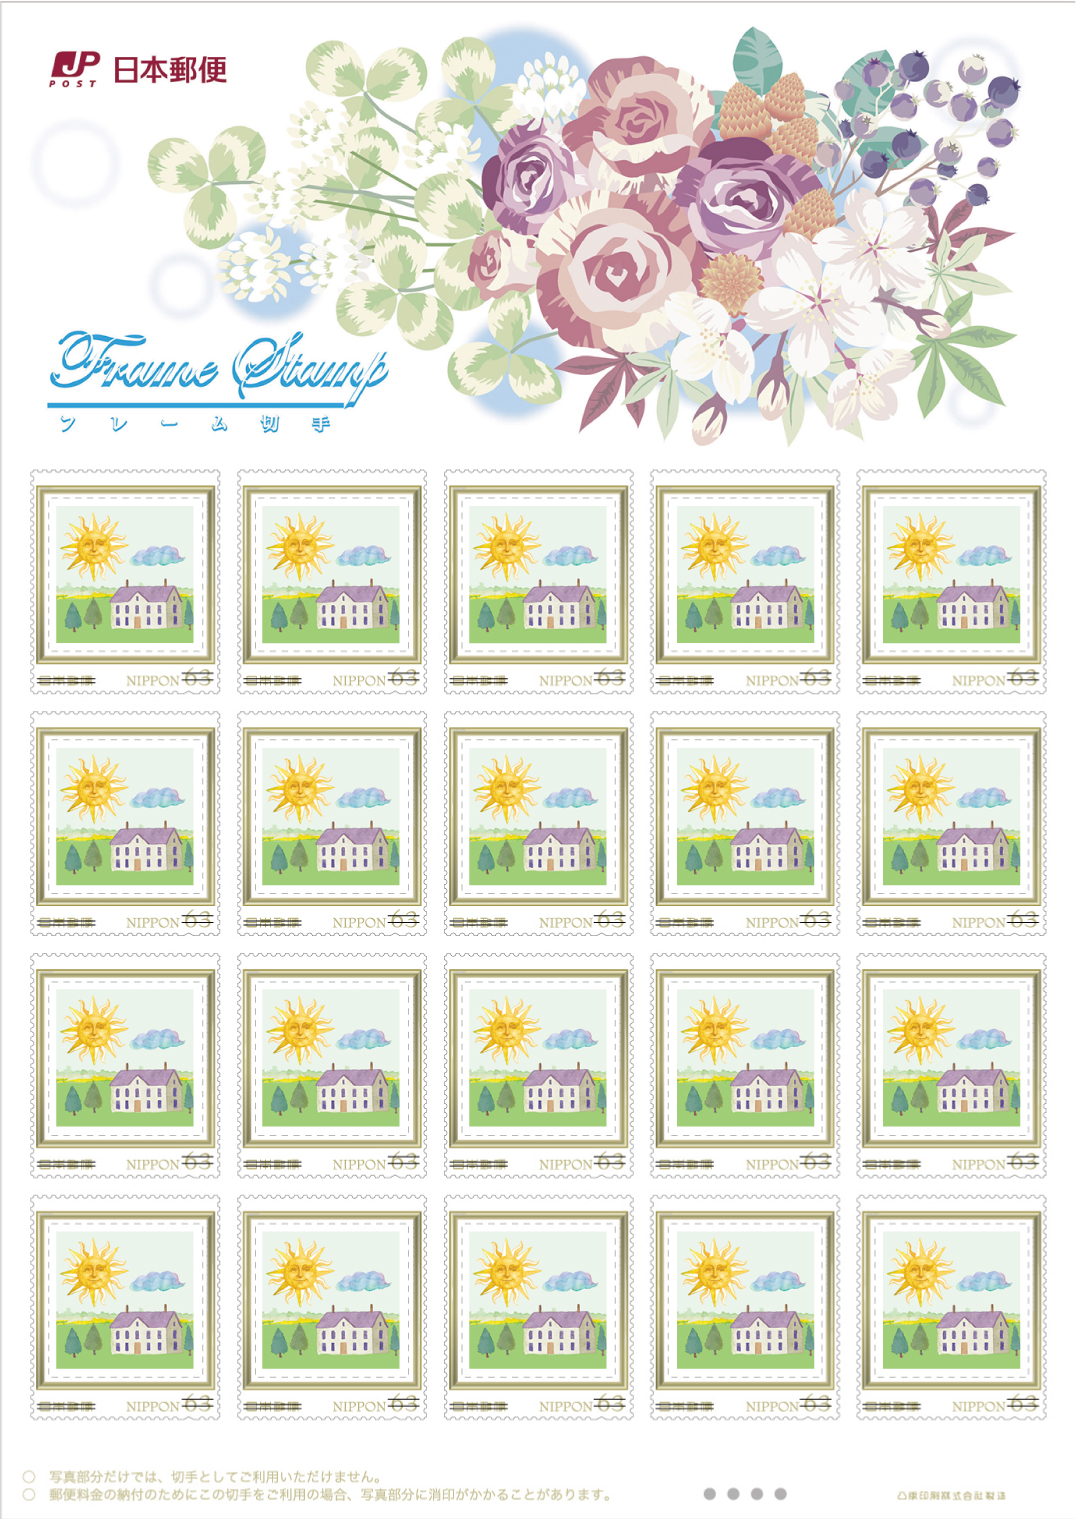 オリジナル切手作成サービス 日本郵便株式会社